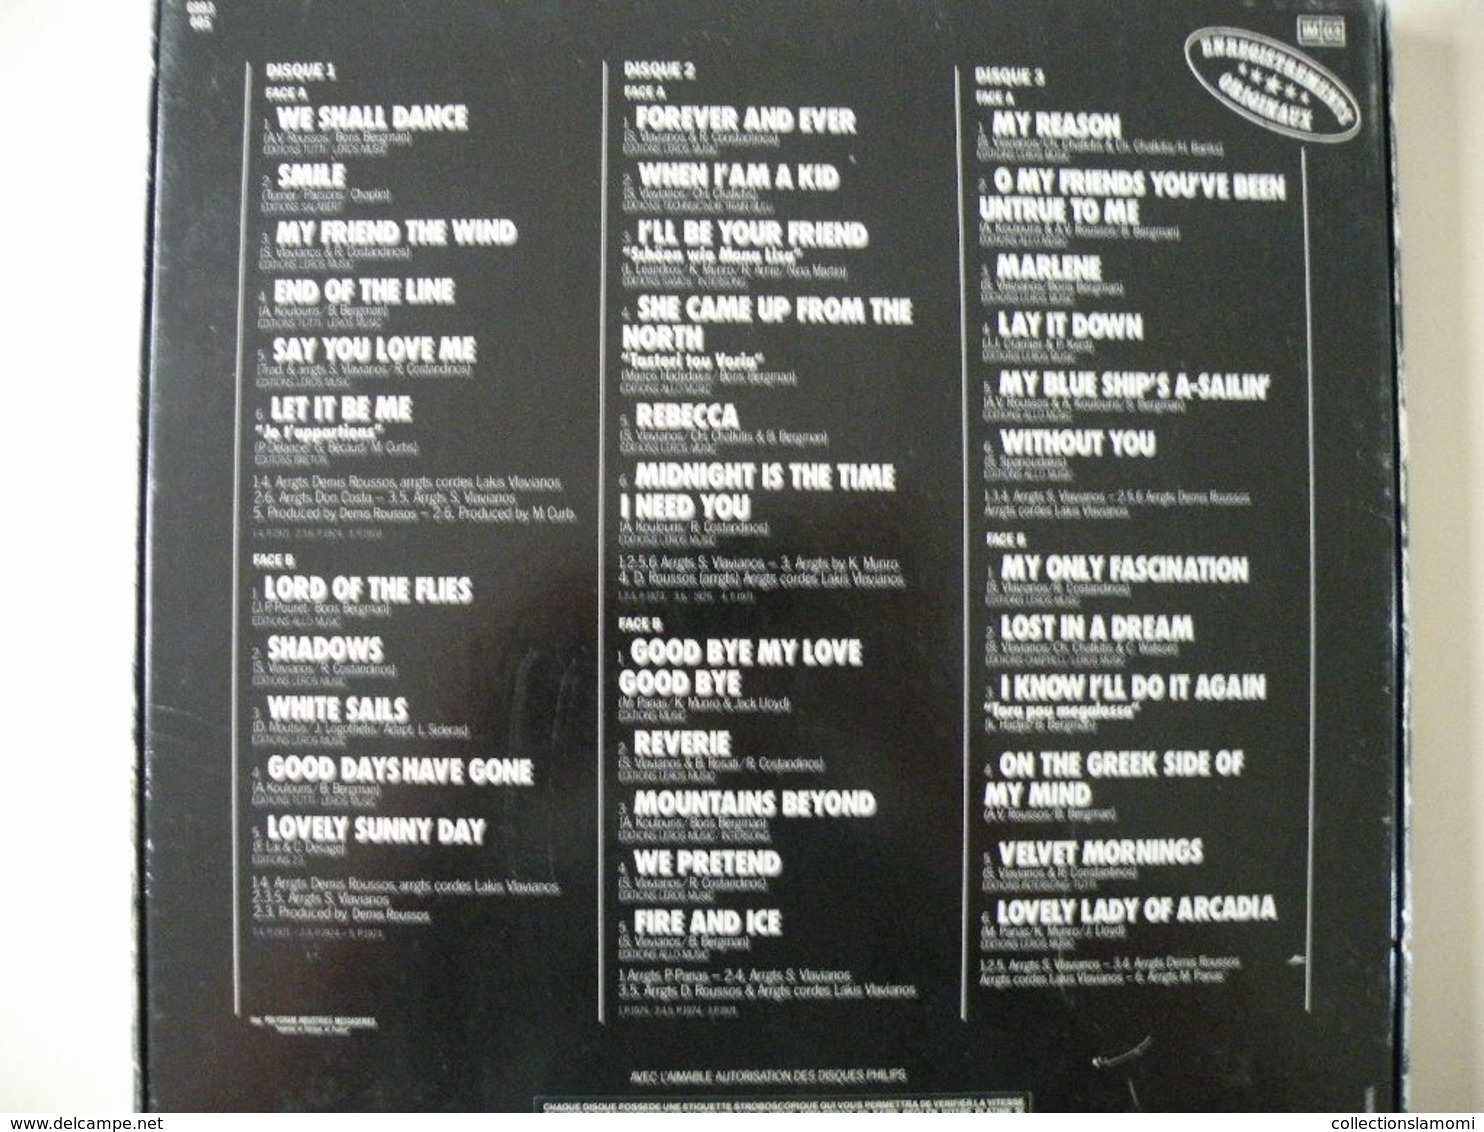 Denis Roussos, 1971 à 75 - (Titres sur photos) - Vinyle 33 T LP Coffré 3 vinyls